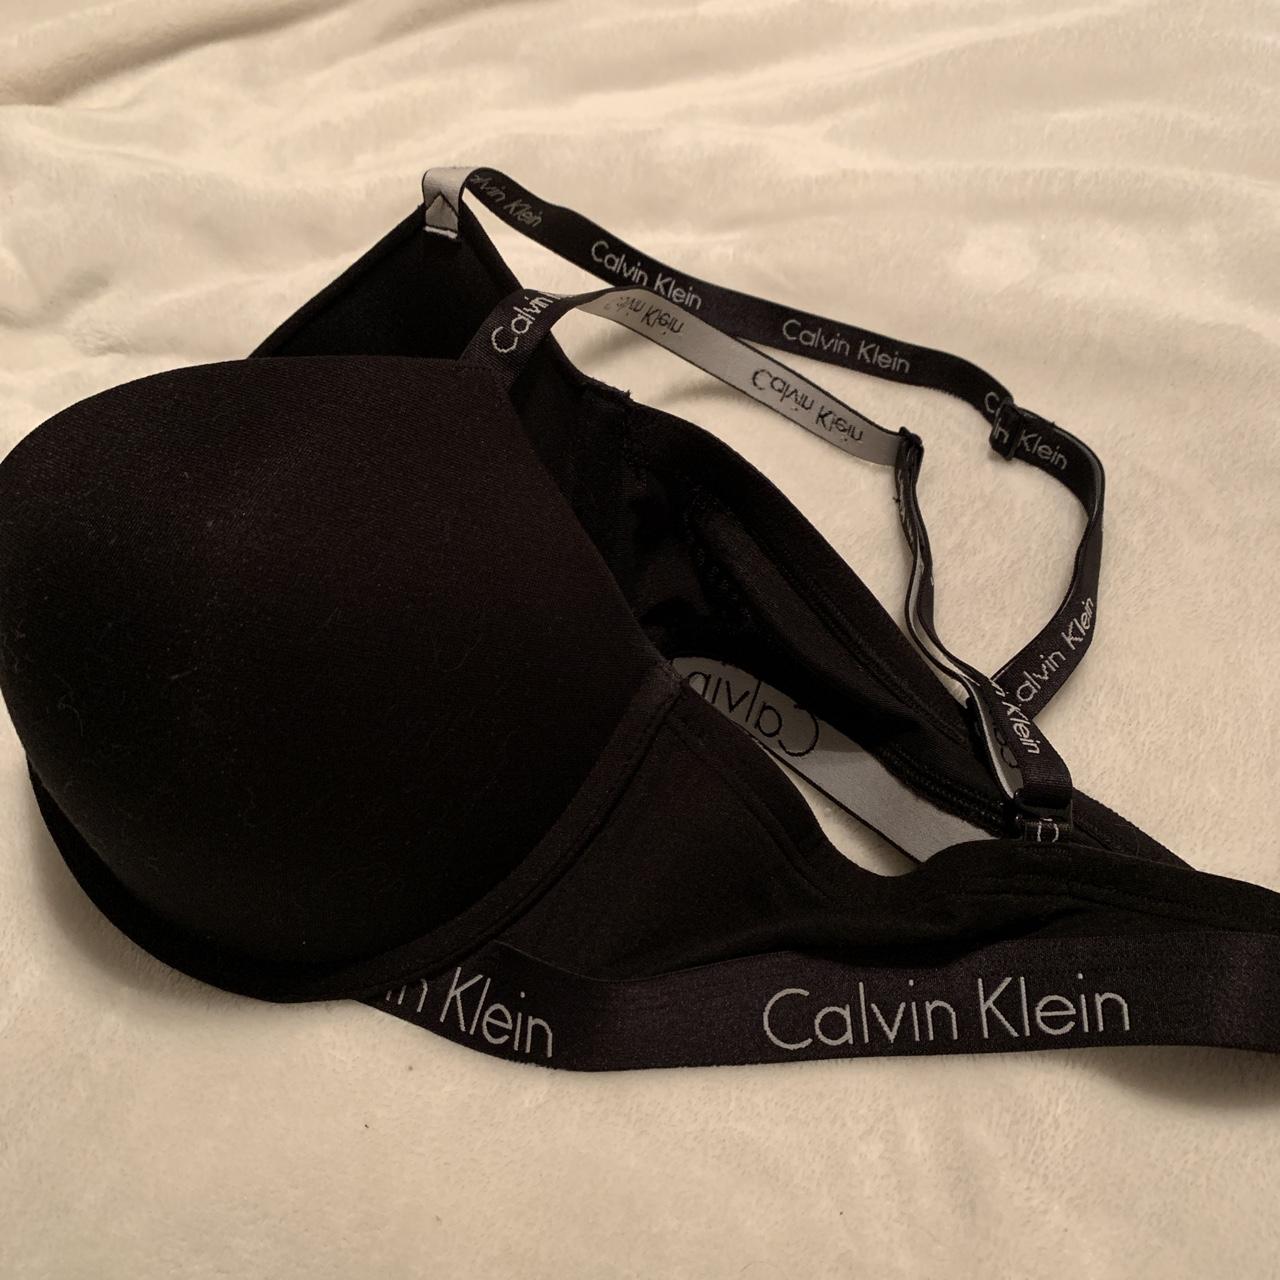 NWOT Black Calvin Klein Logo Padded Push-up